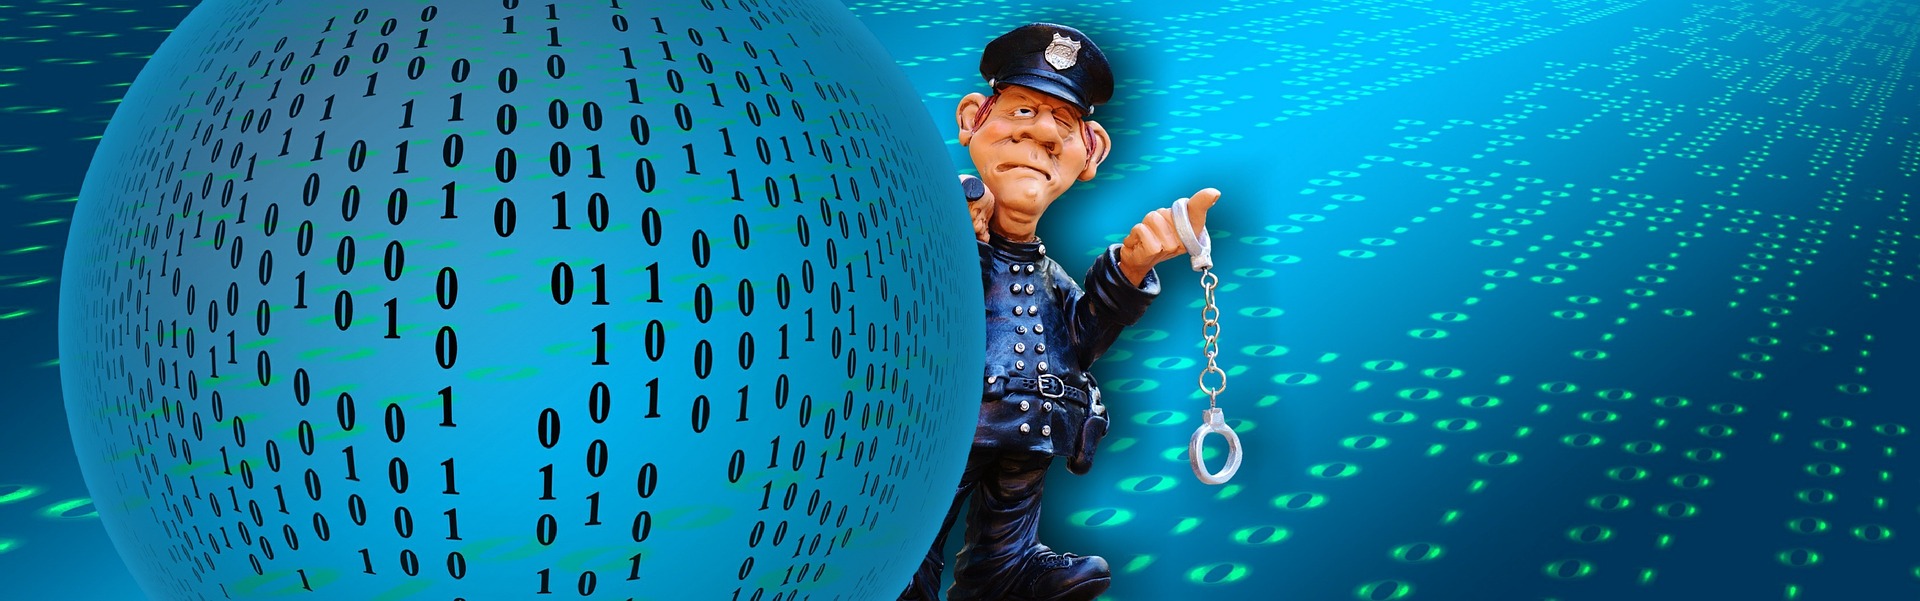 Компьютерная безопасность и преступность